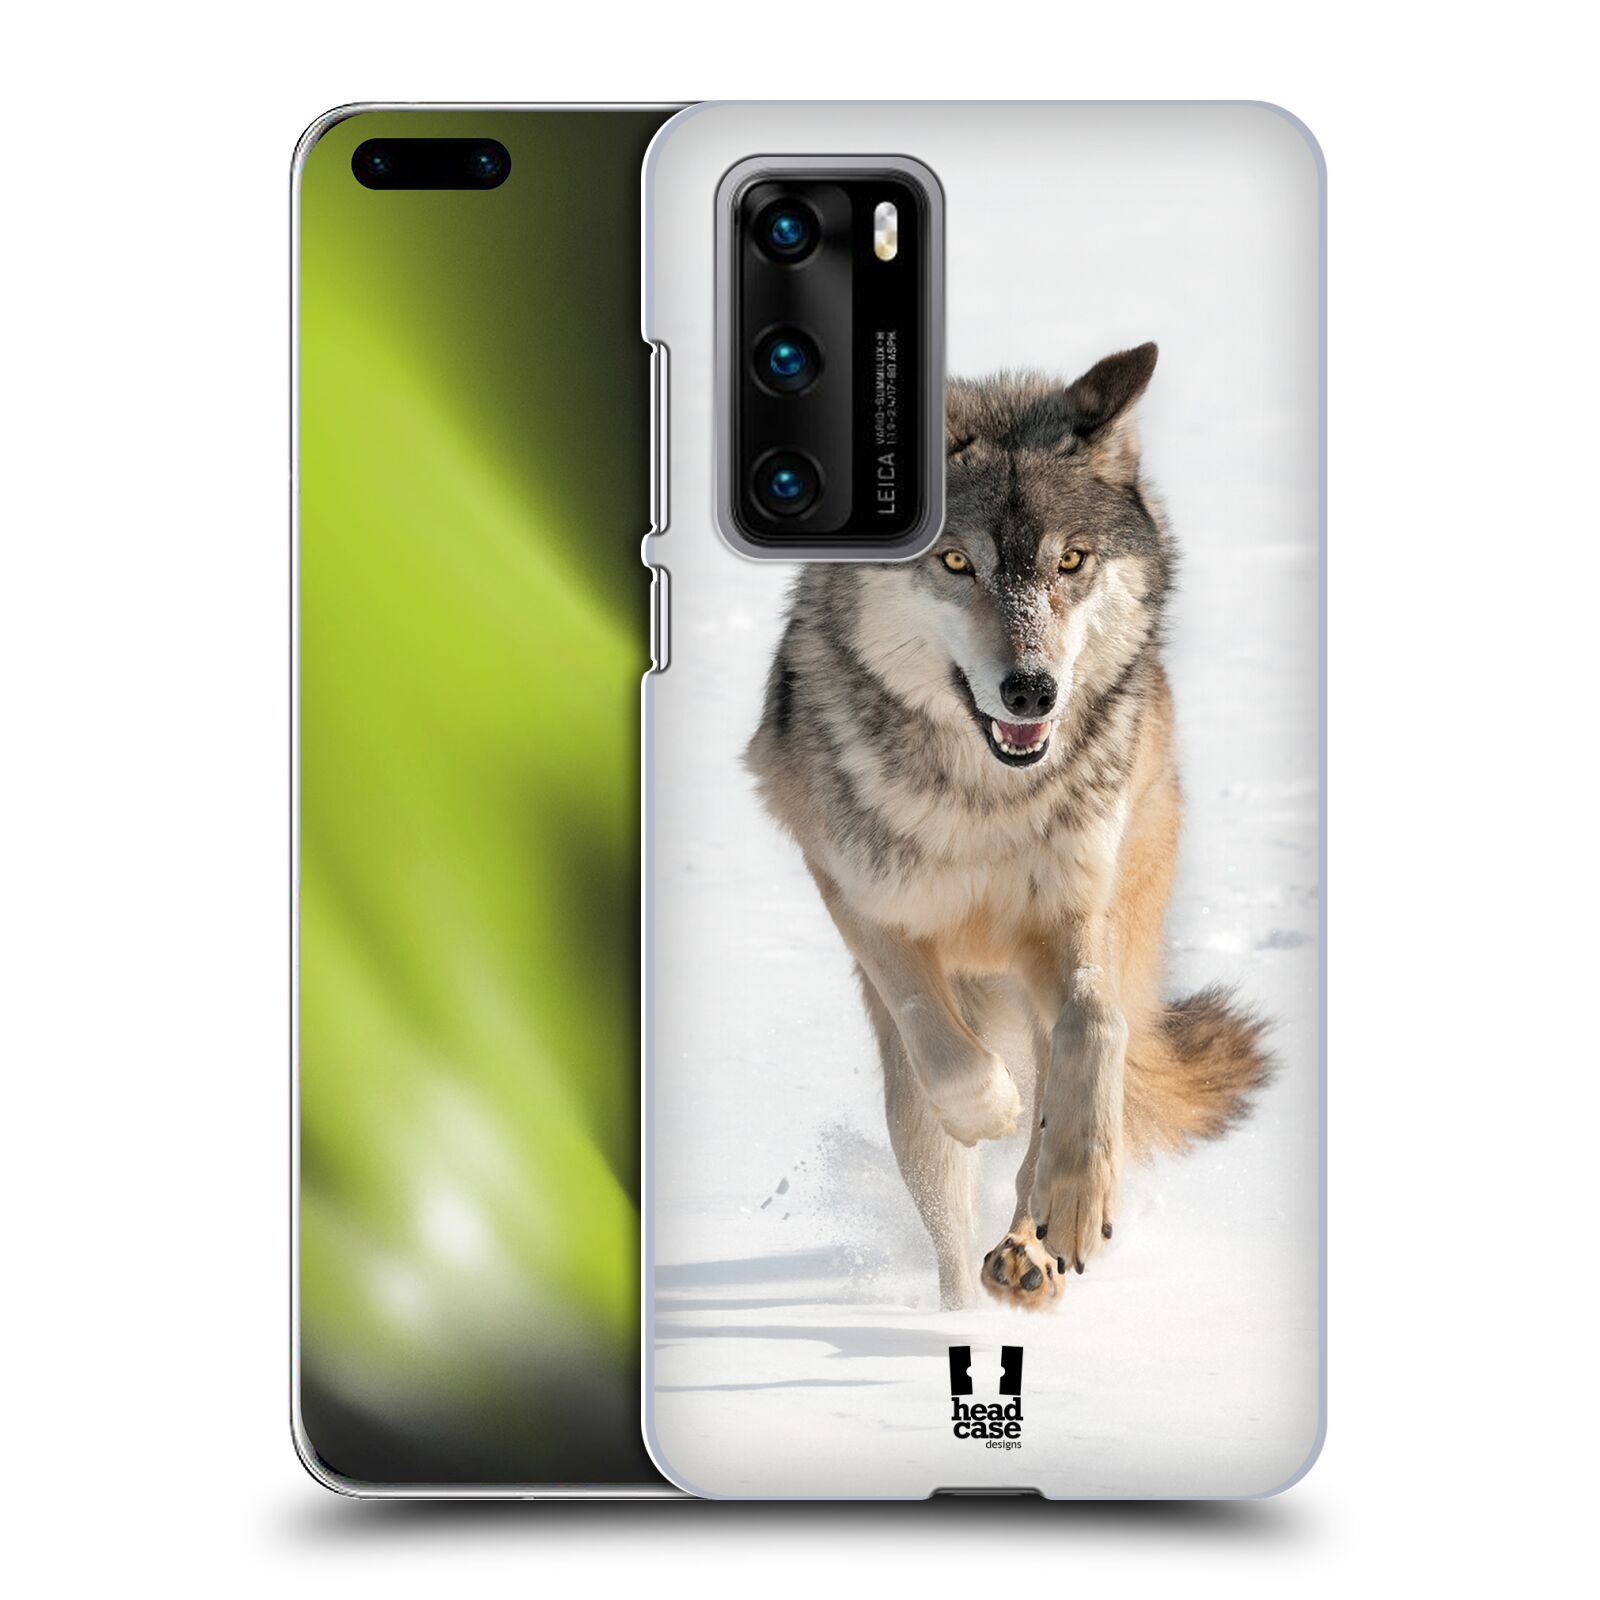 Zadní obal pro mobil Huawei P40 - HEAD CASE - Svět zvířat divoký vlk